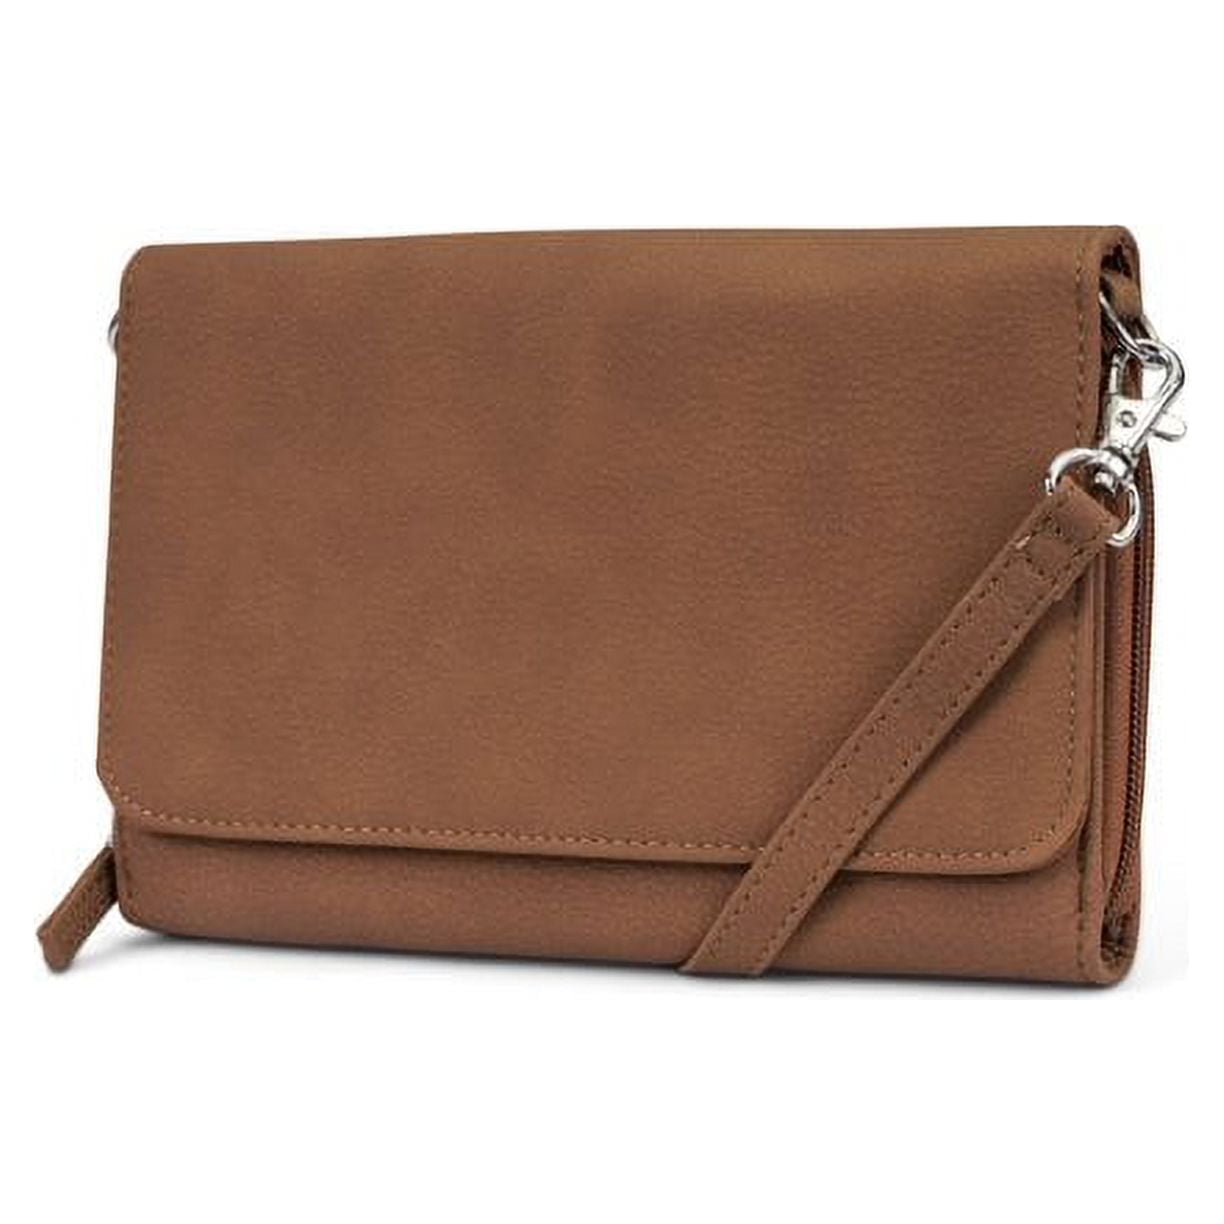 Mundi Rfid Crossbody Bag for Women Anti Theft Travel Purse Handbag ...